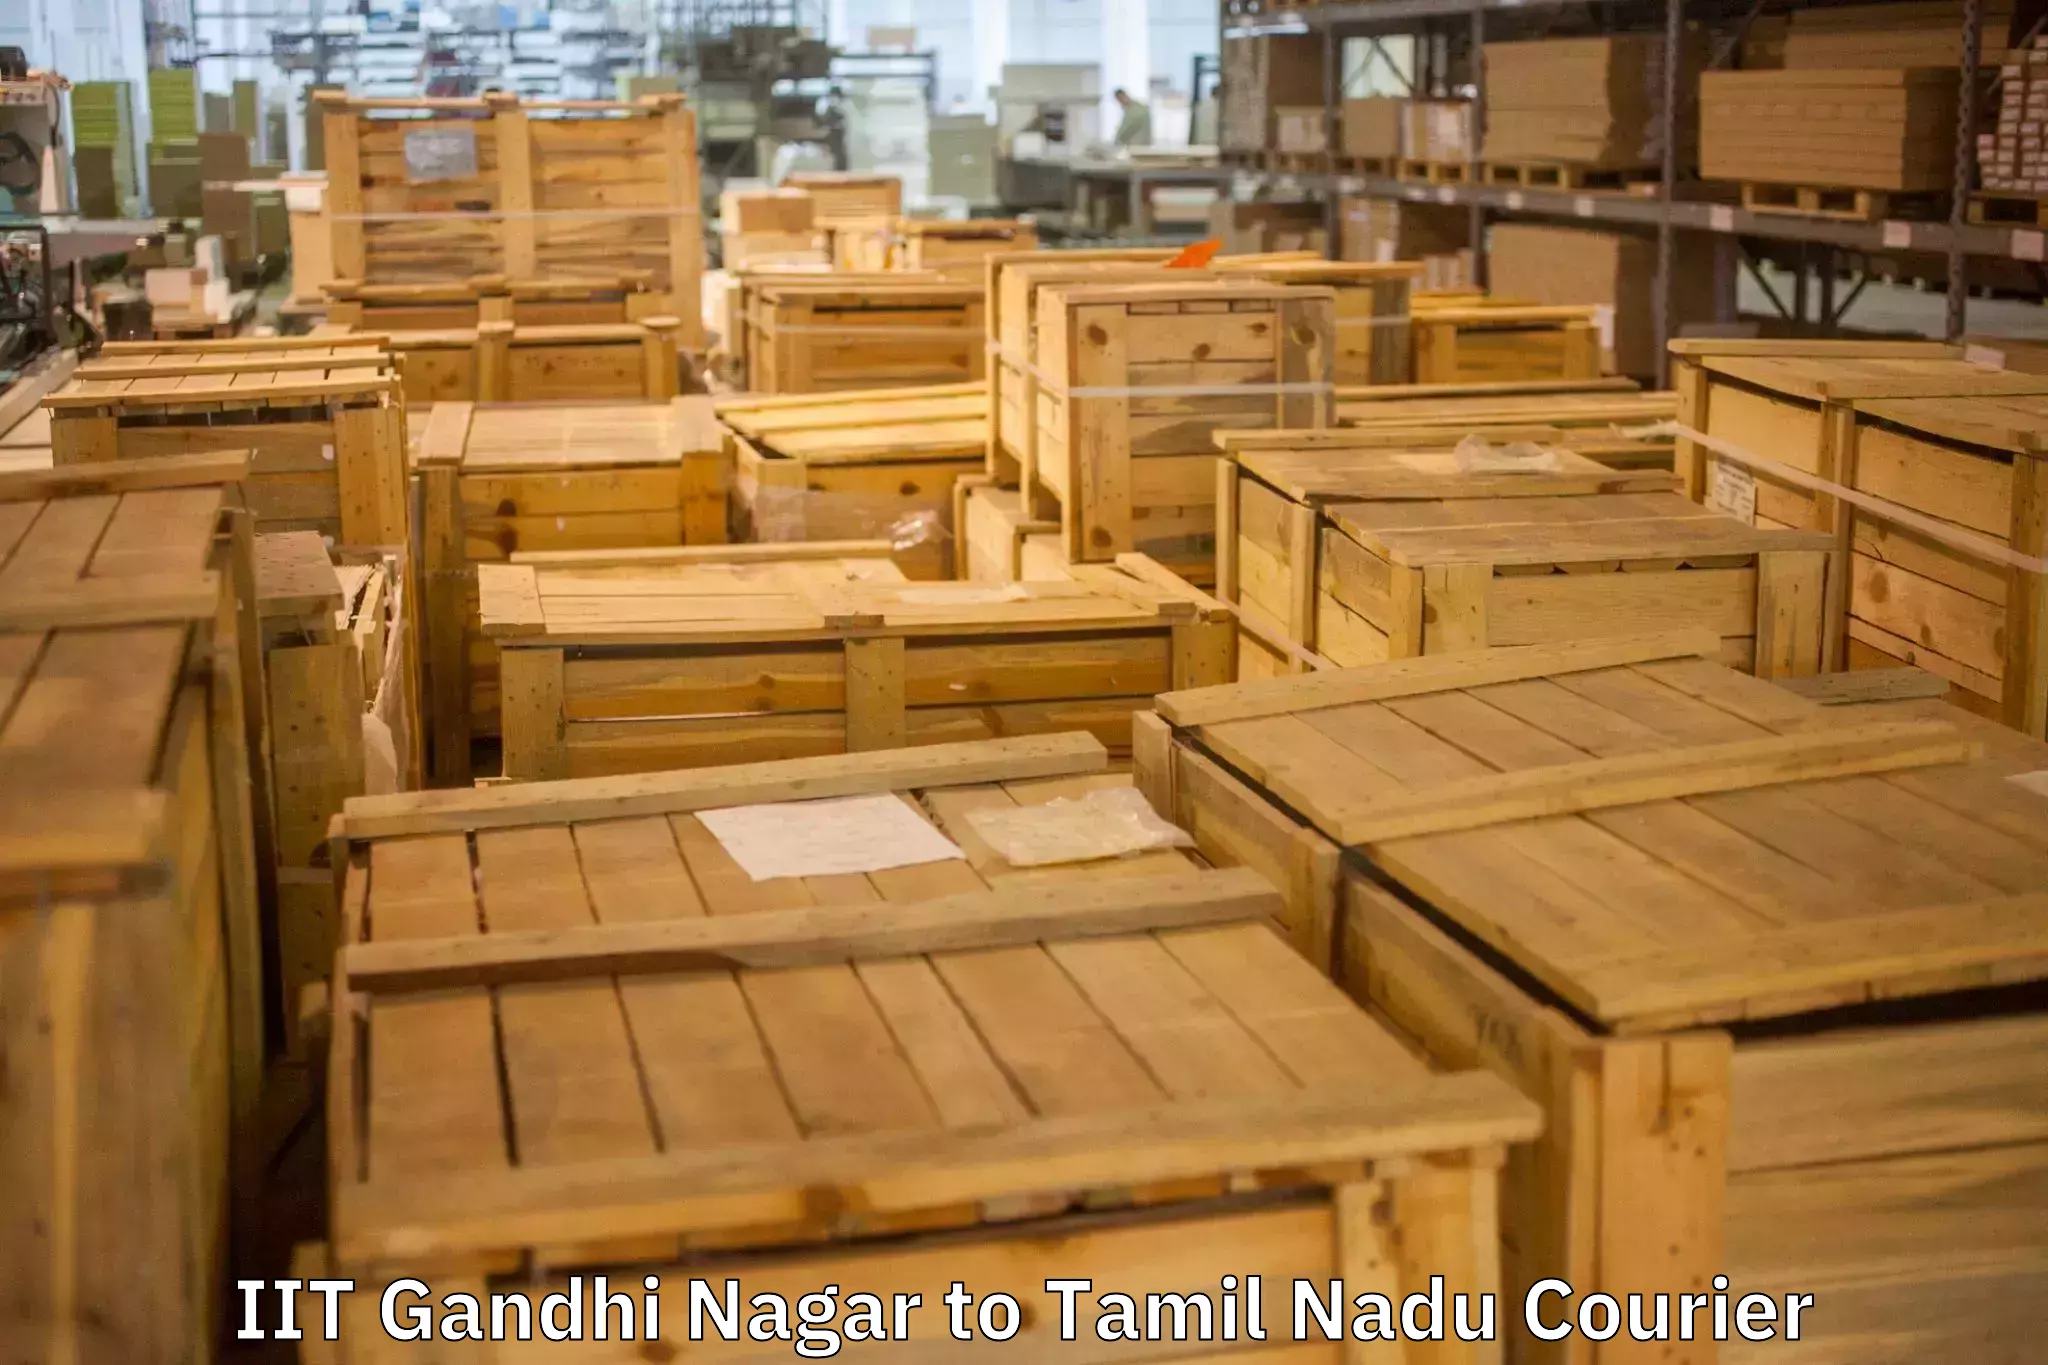 Reliable goods transport in IIT Gandhi Nagar to Nandambakkam